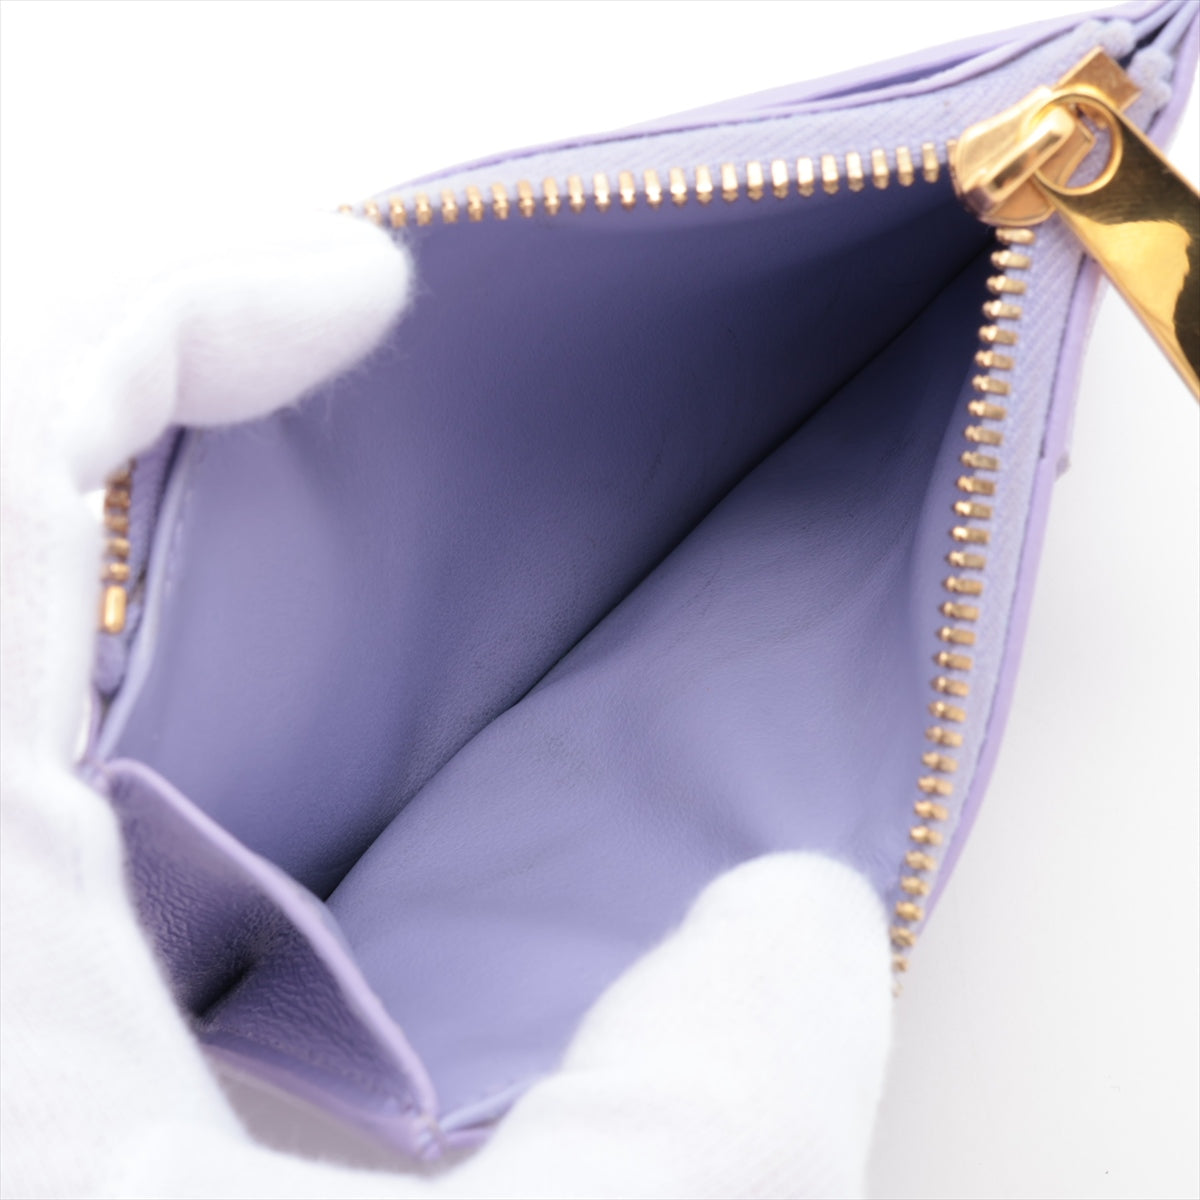 Bottega Veneta Maxine 推出皮革零錢盒珍珠